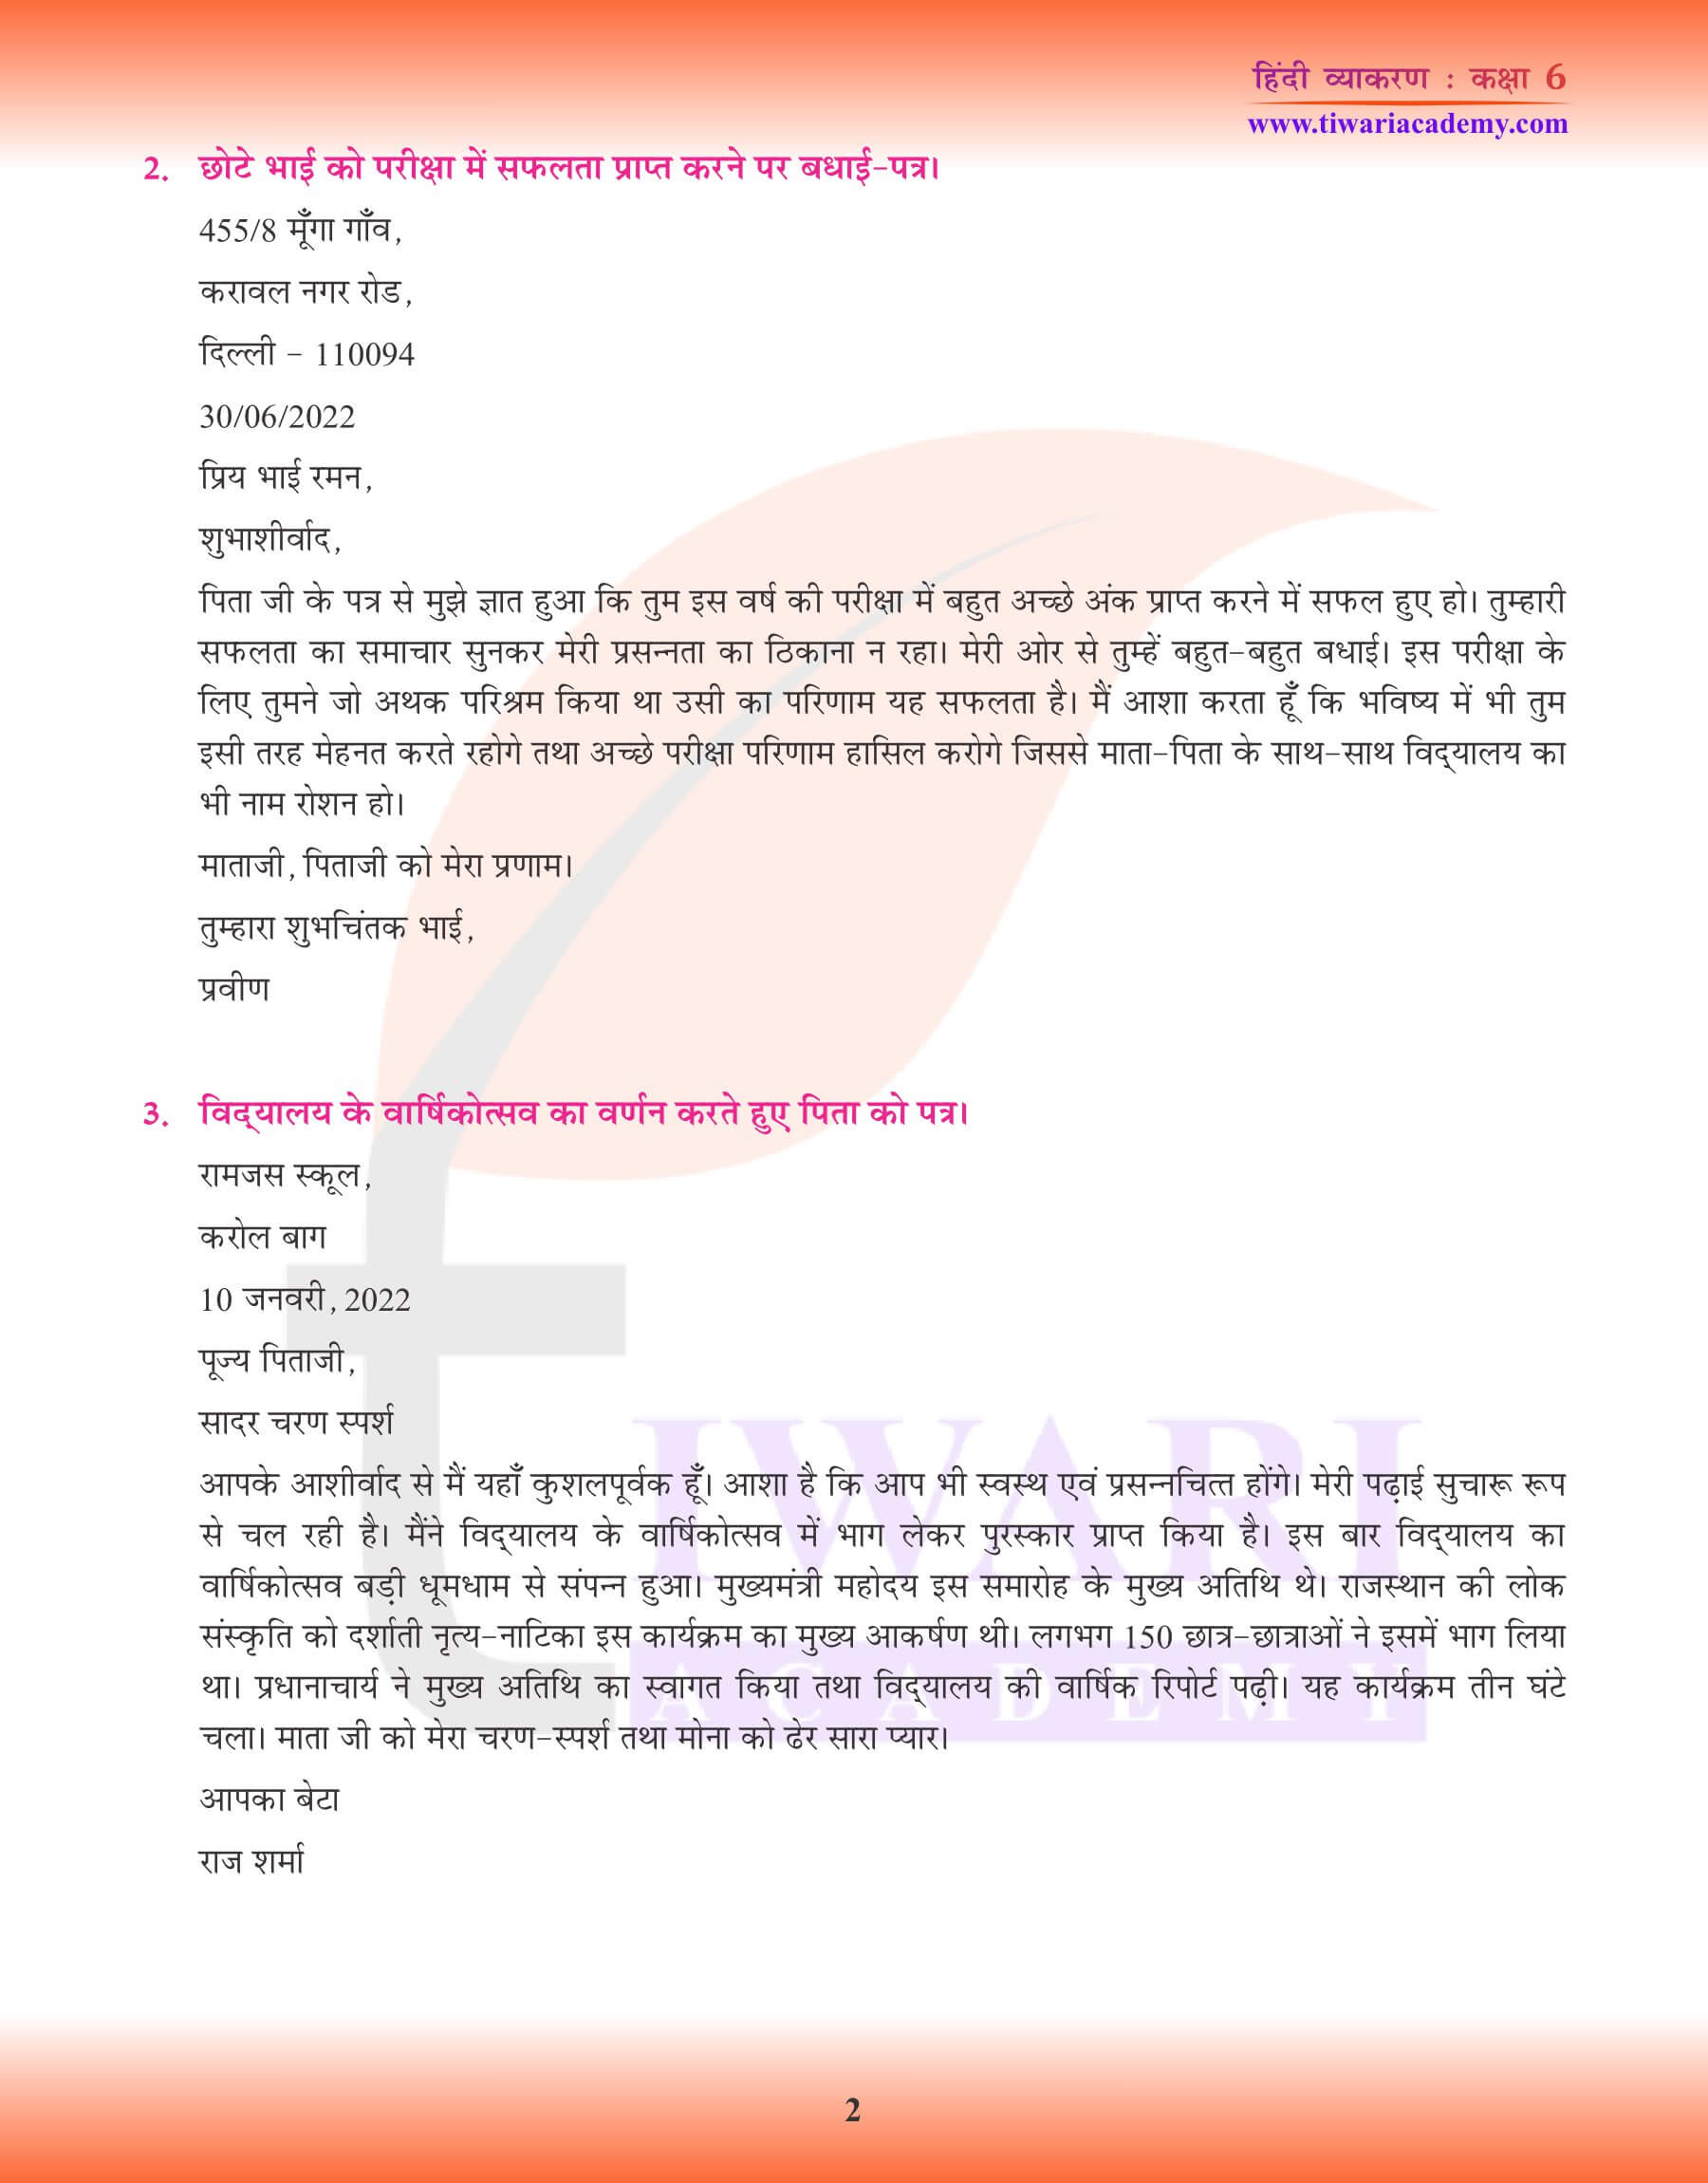 कक्षा 6 हिंदी व्याकरण पत्र लेखन के उदाहरण